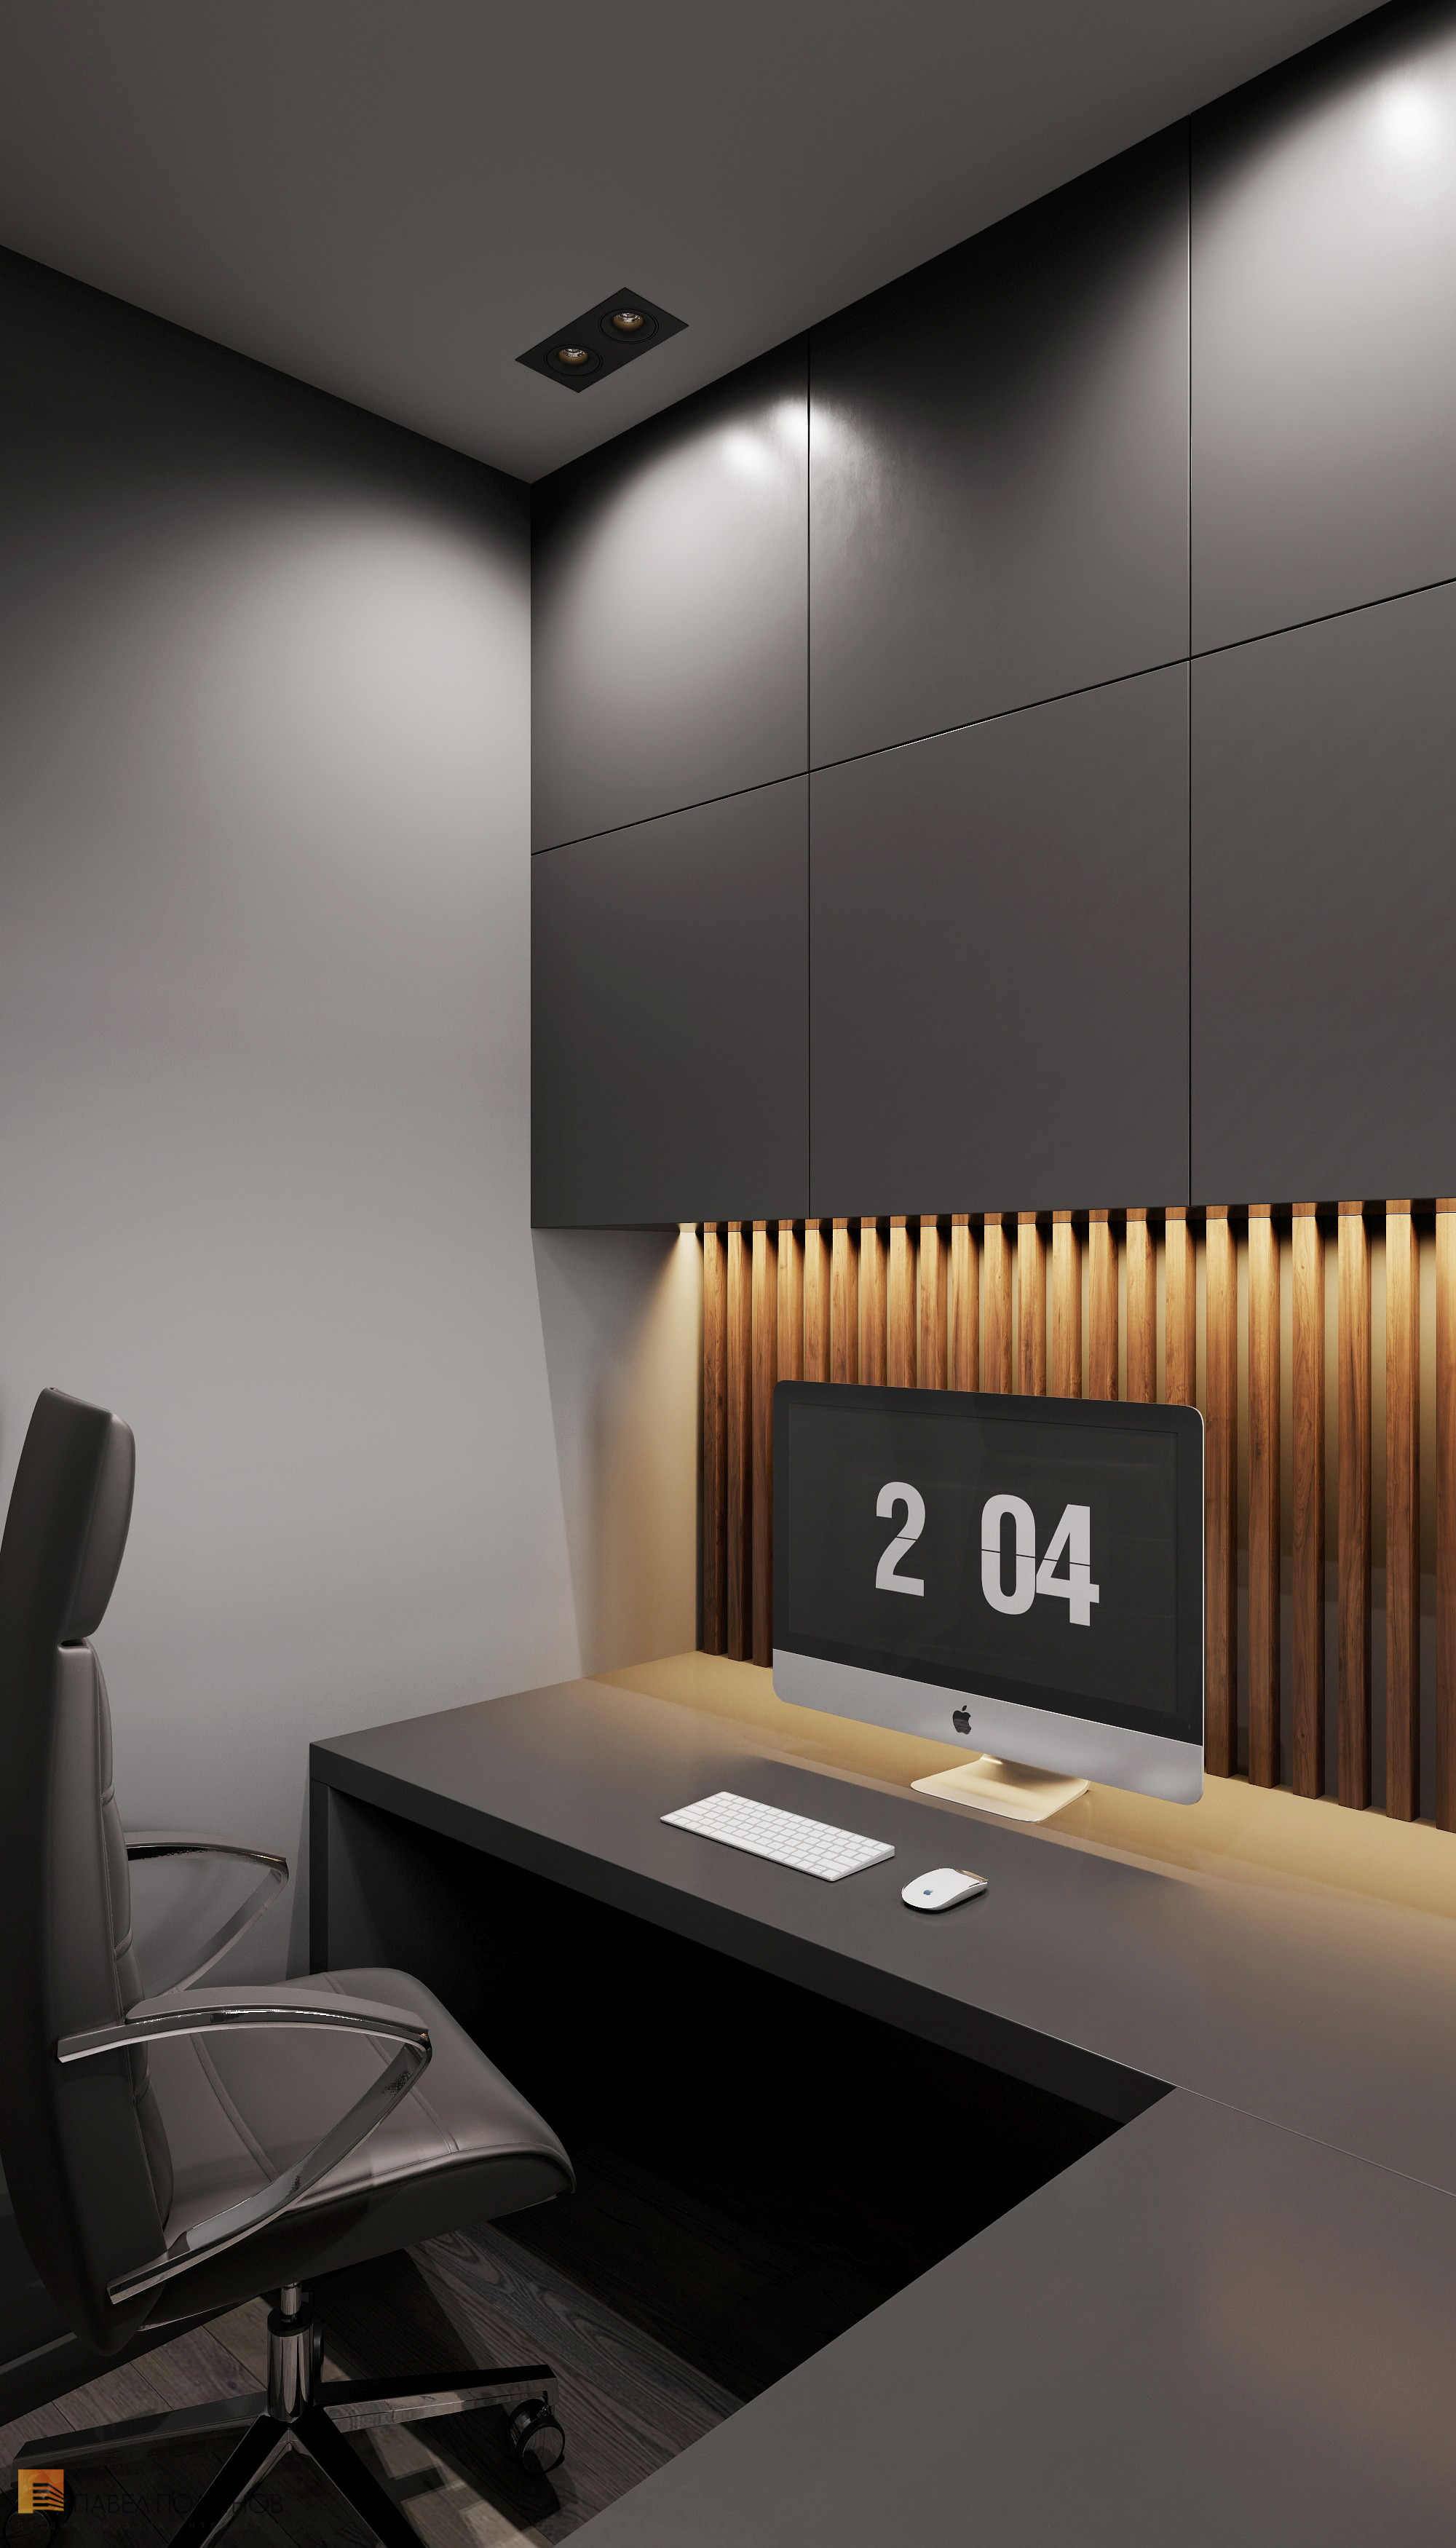 Фото дизайн домашнего кабинета из проекта «Интерьер квартиры в современном стиле, ЖК «Символ», 64 кв.м.»